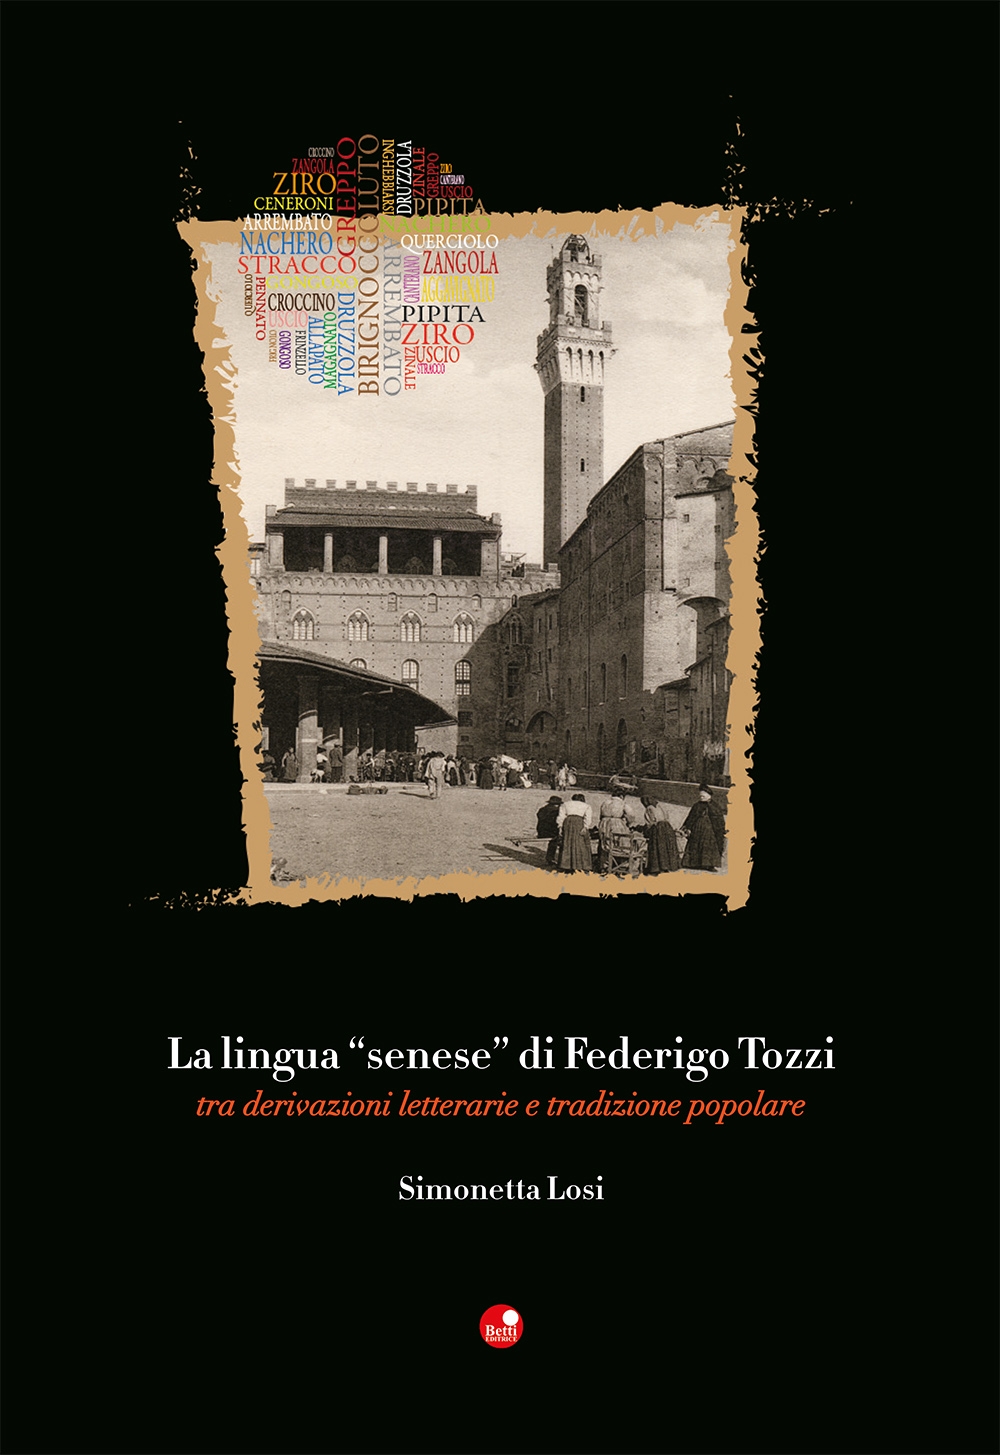 La lingua “senese” di Federigo Tozzi tra derivazioni letterarie e tradizione popolare